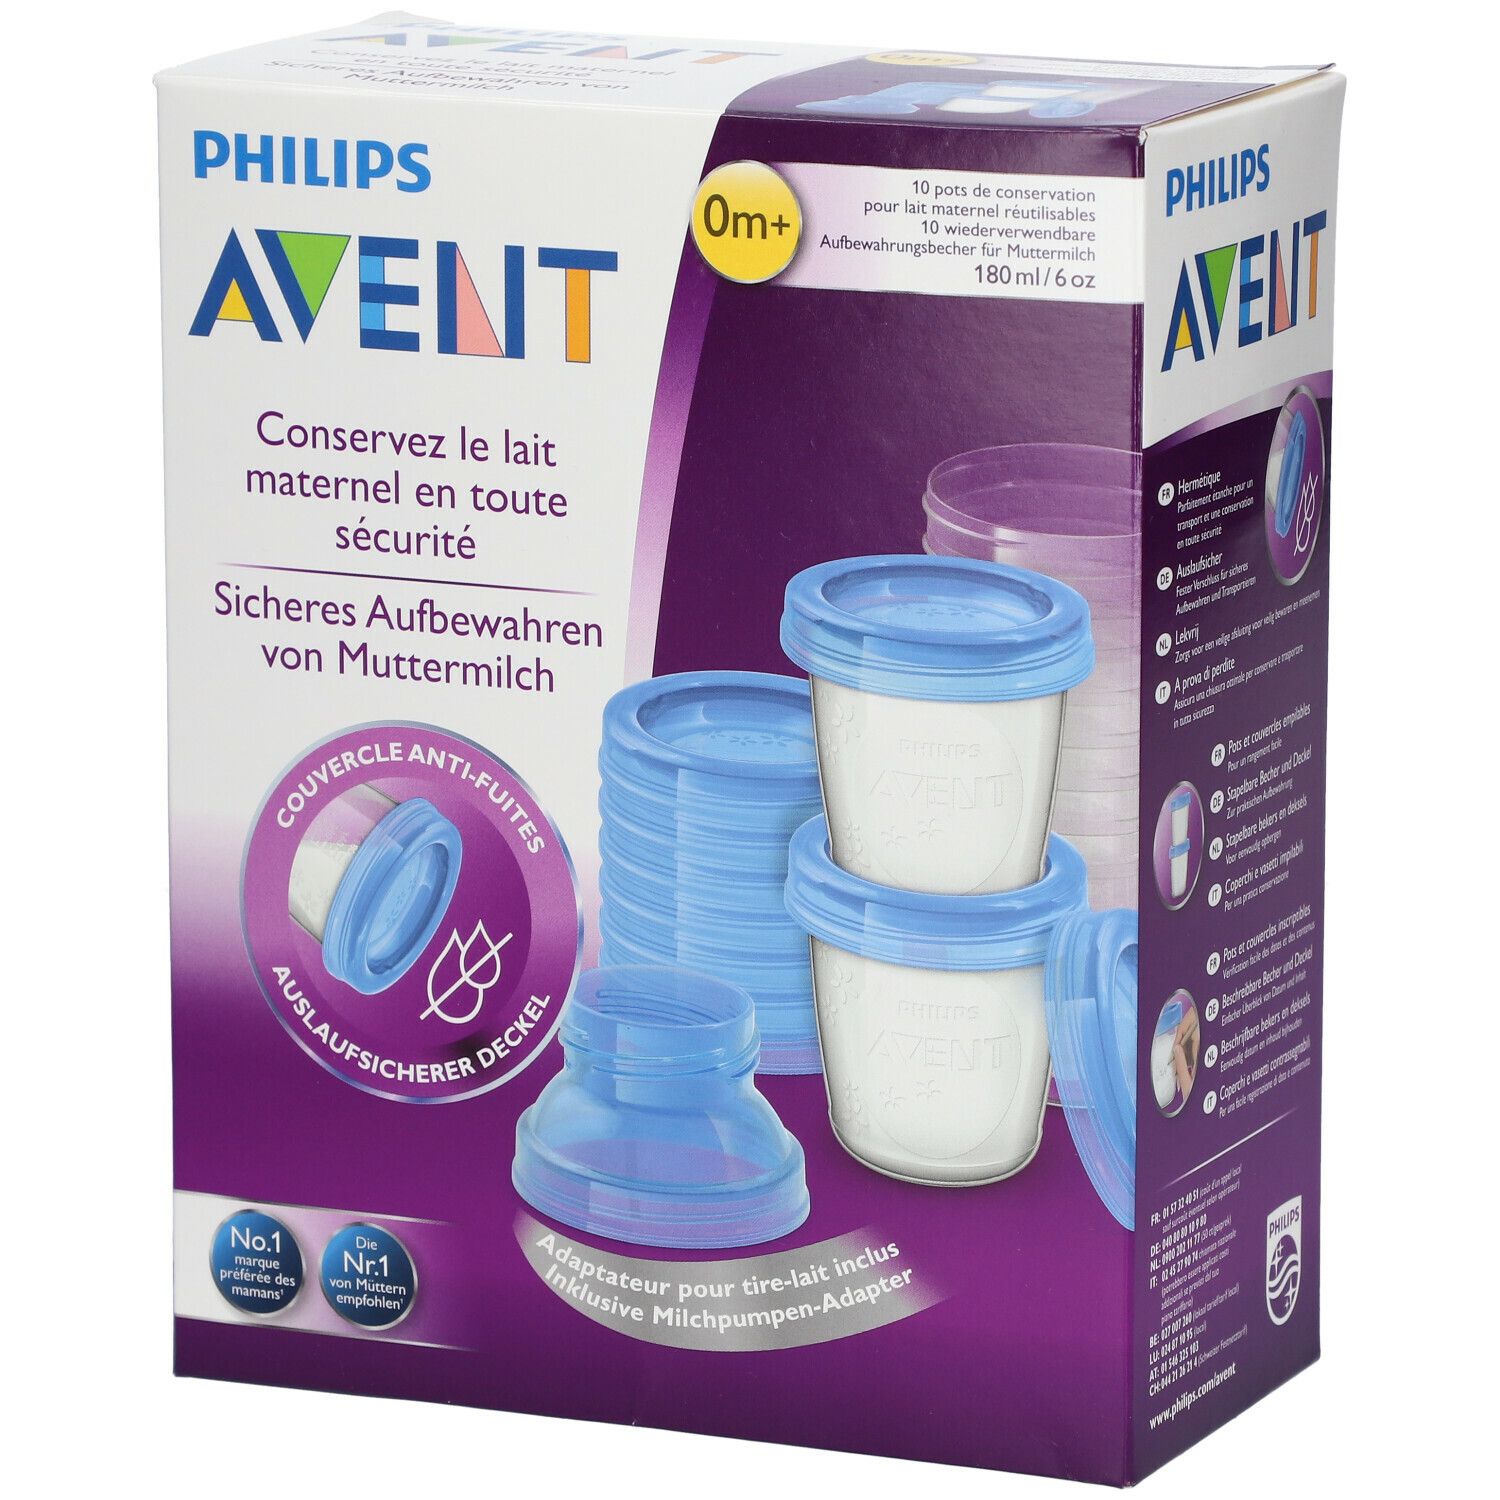 PHILIPS AVENT Pot de conservation pour lait maternel SCF619/05